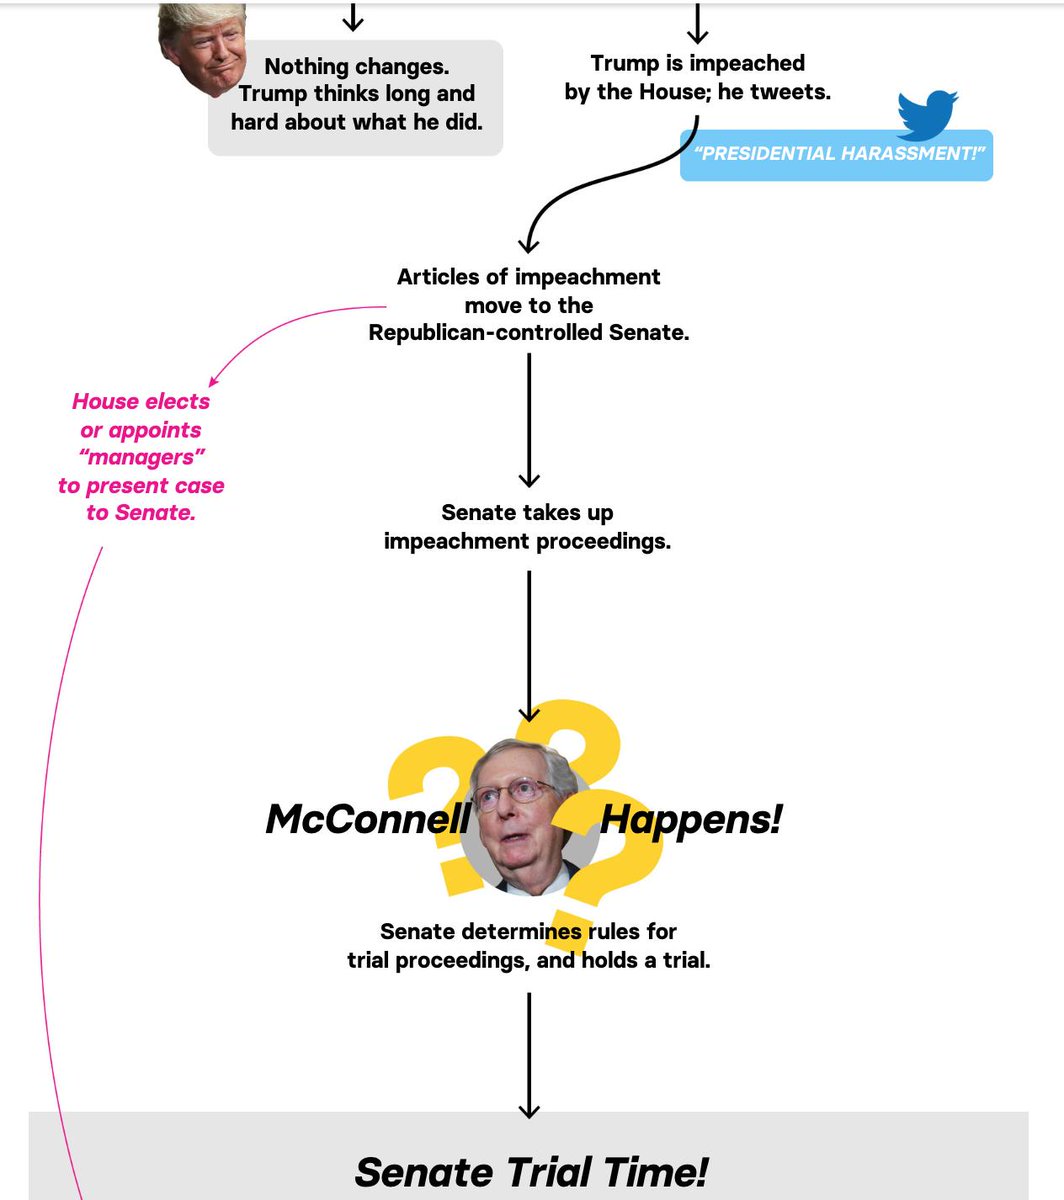 Impeachment Process Flow Chart